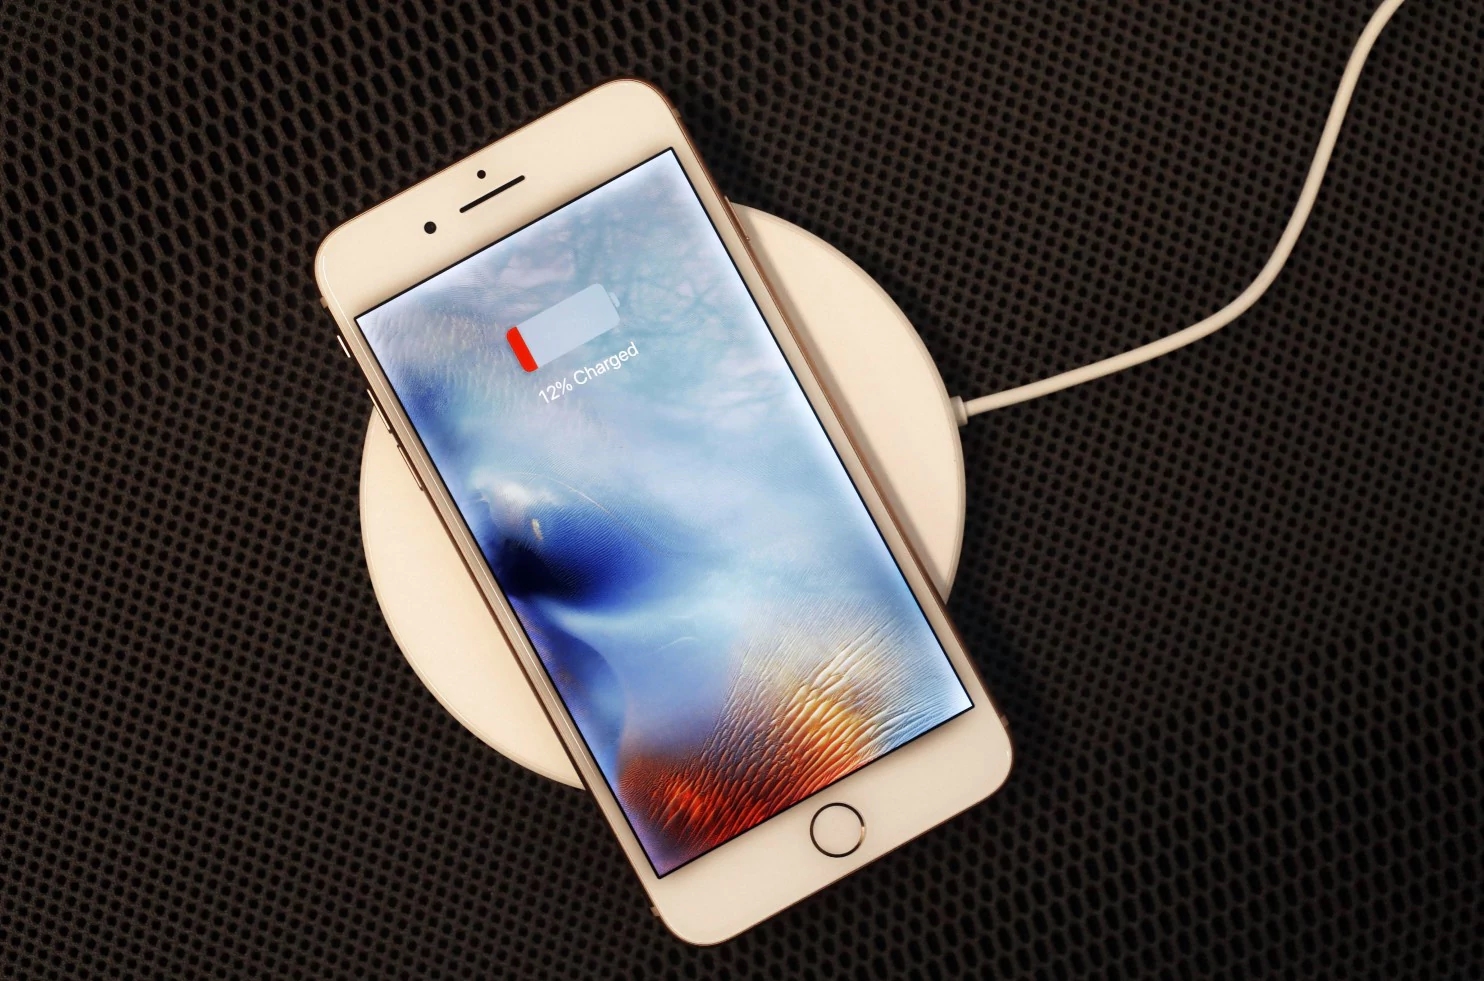 iPhone 11 : Apple aurait désactivé la recharge inversée - CNET France